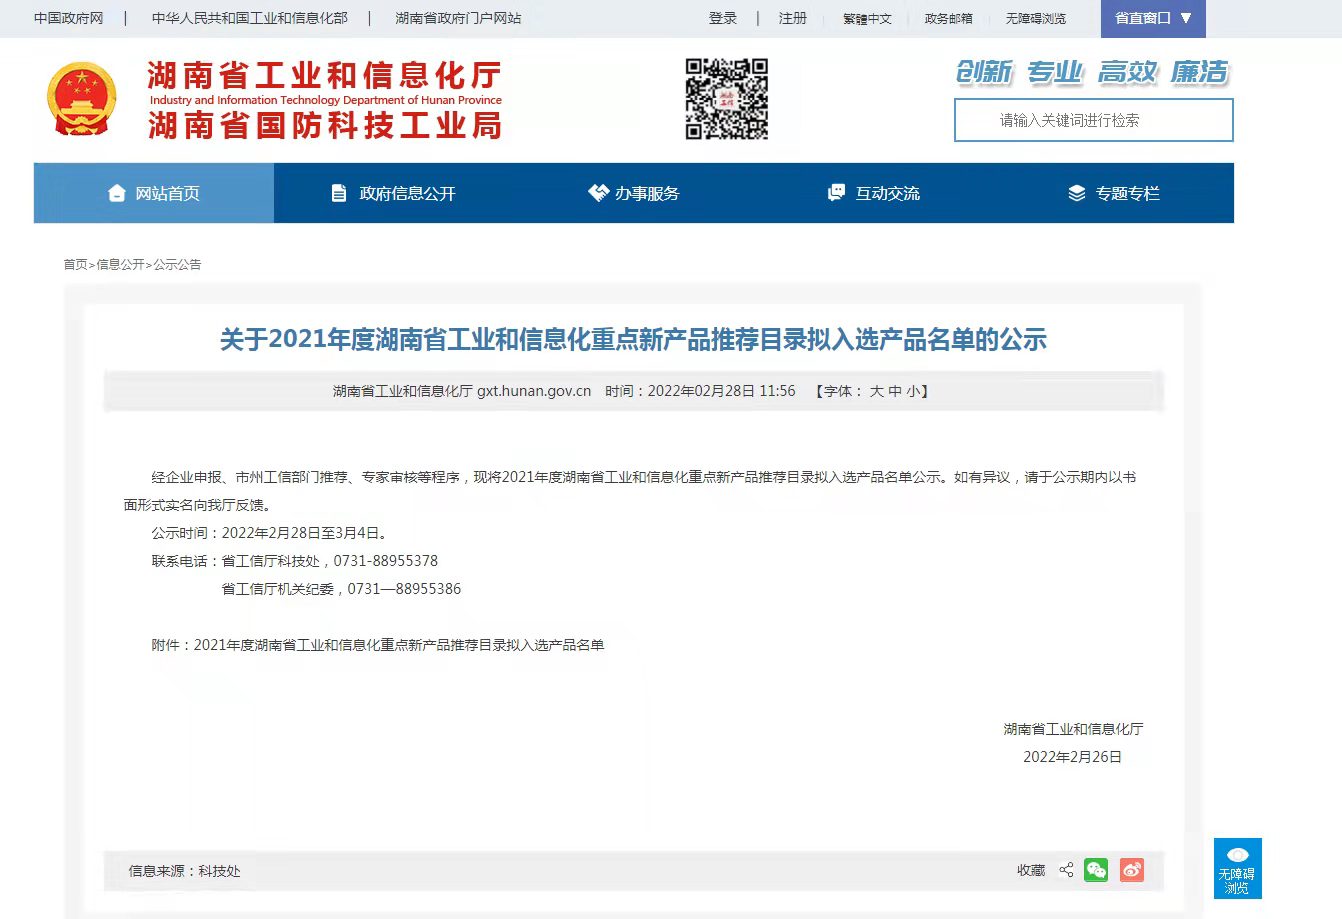 旺坤食品级不锈钢管材及管件入选湖南省工业和信息化重点新产品推荐目录